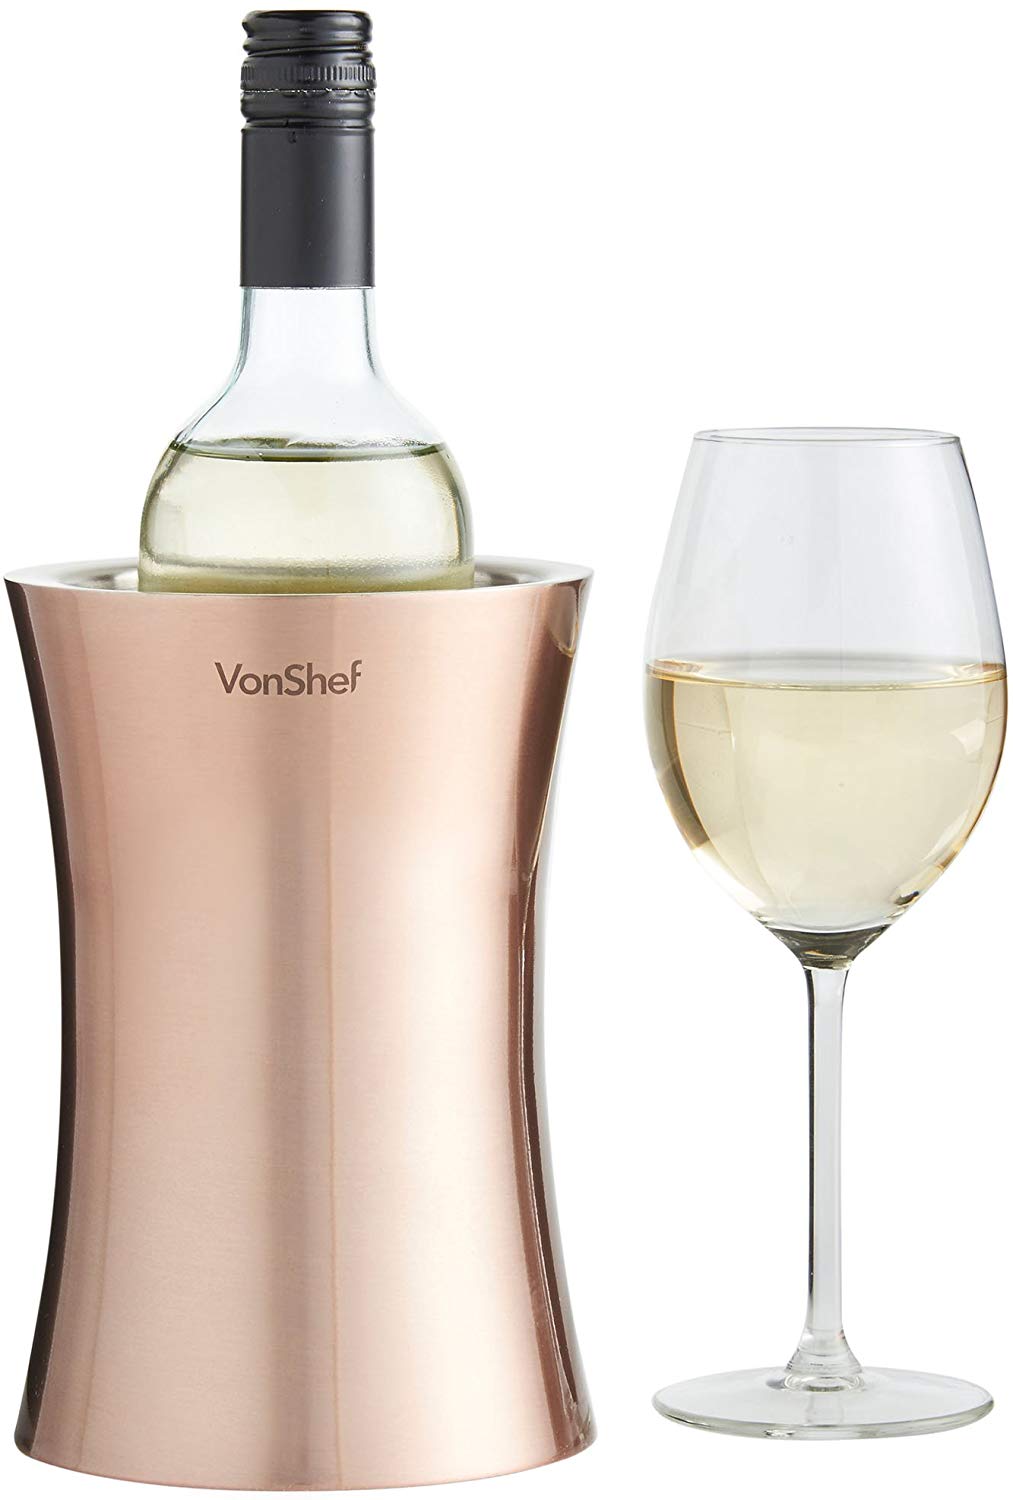 VCopper Wine Bottle Cooler Chiller - EK CHIC HOME